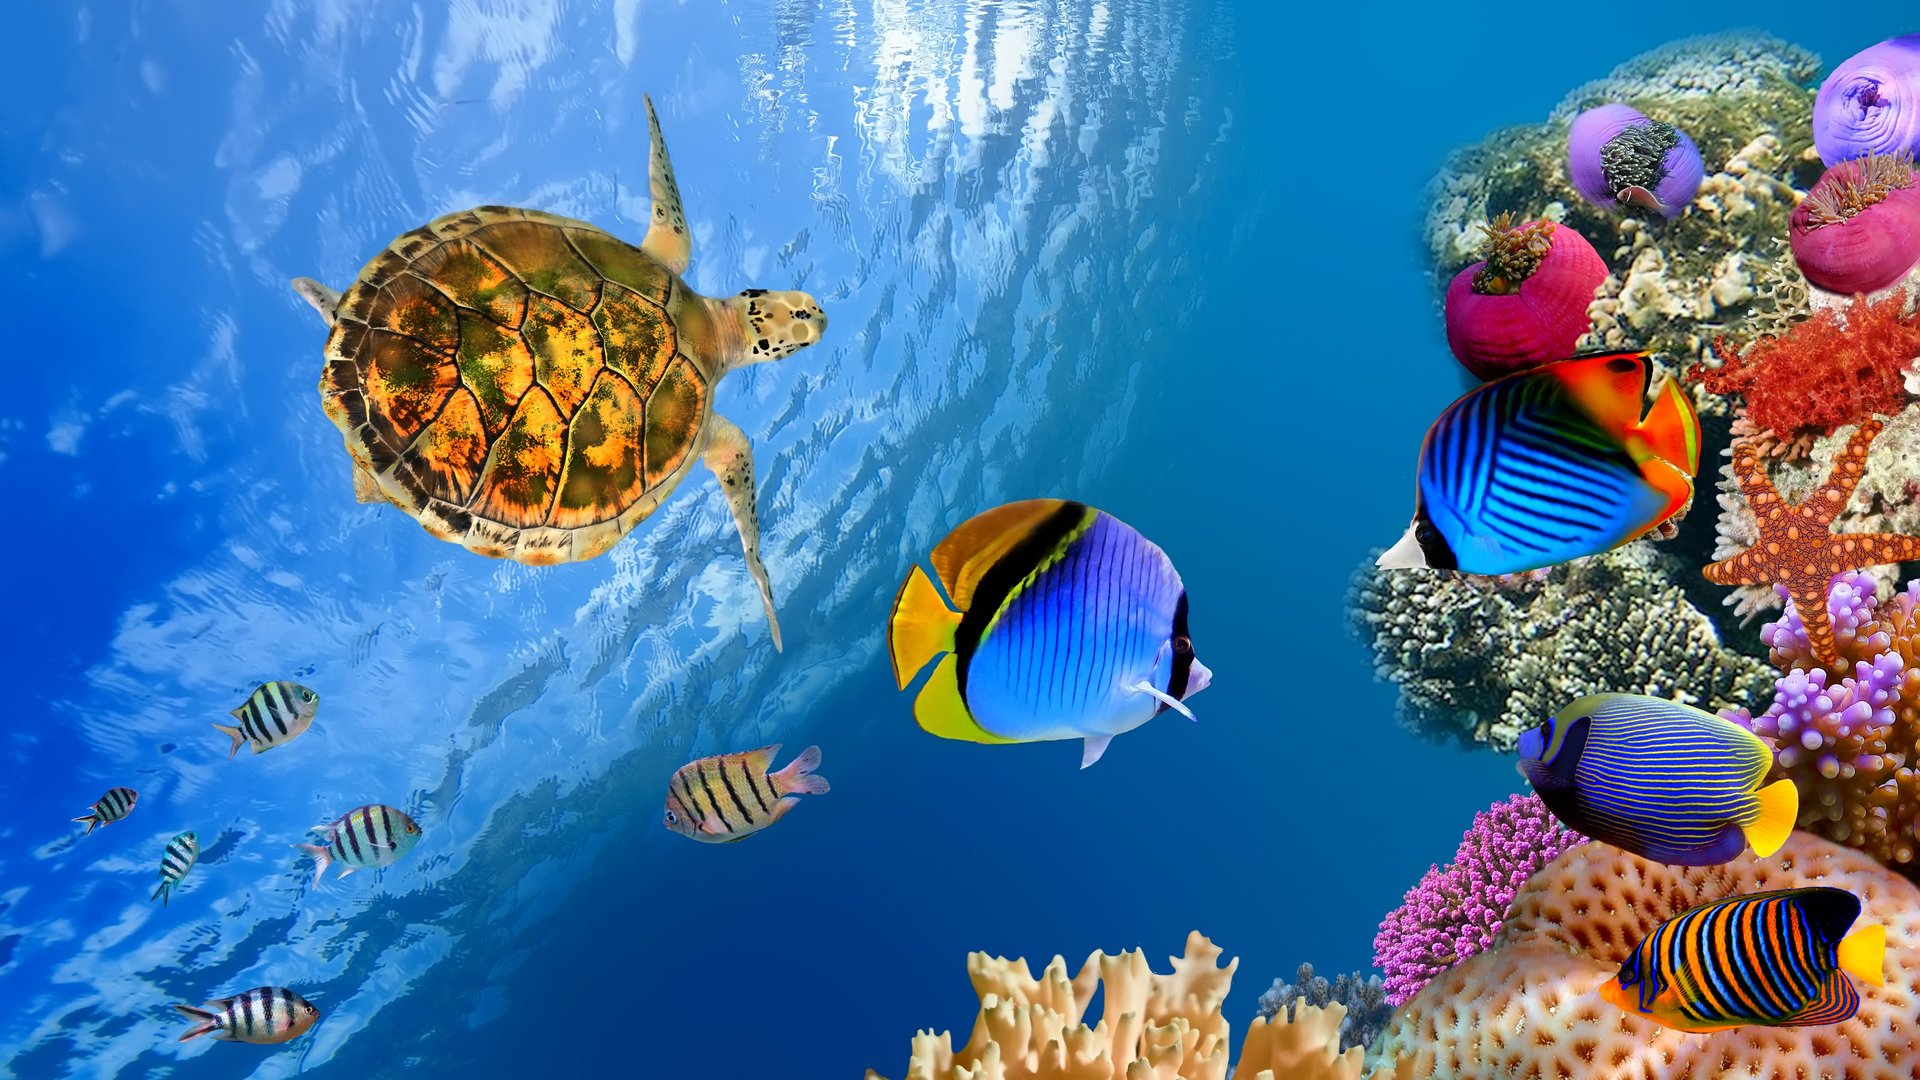 Underwater landscape 4K Ultra HD wallpaper 4k WallpaperNet